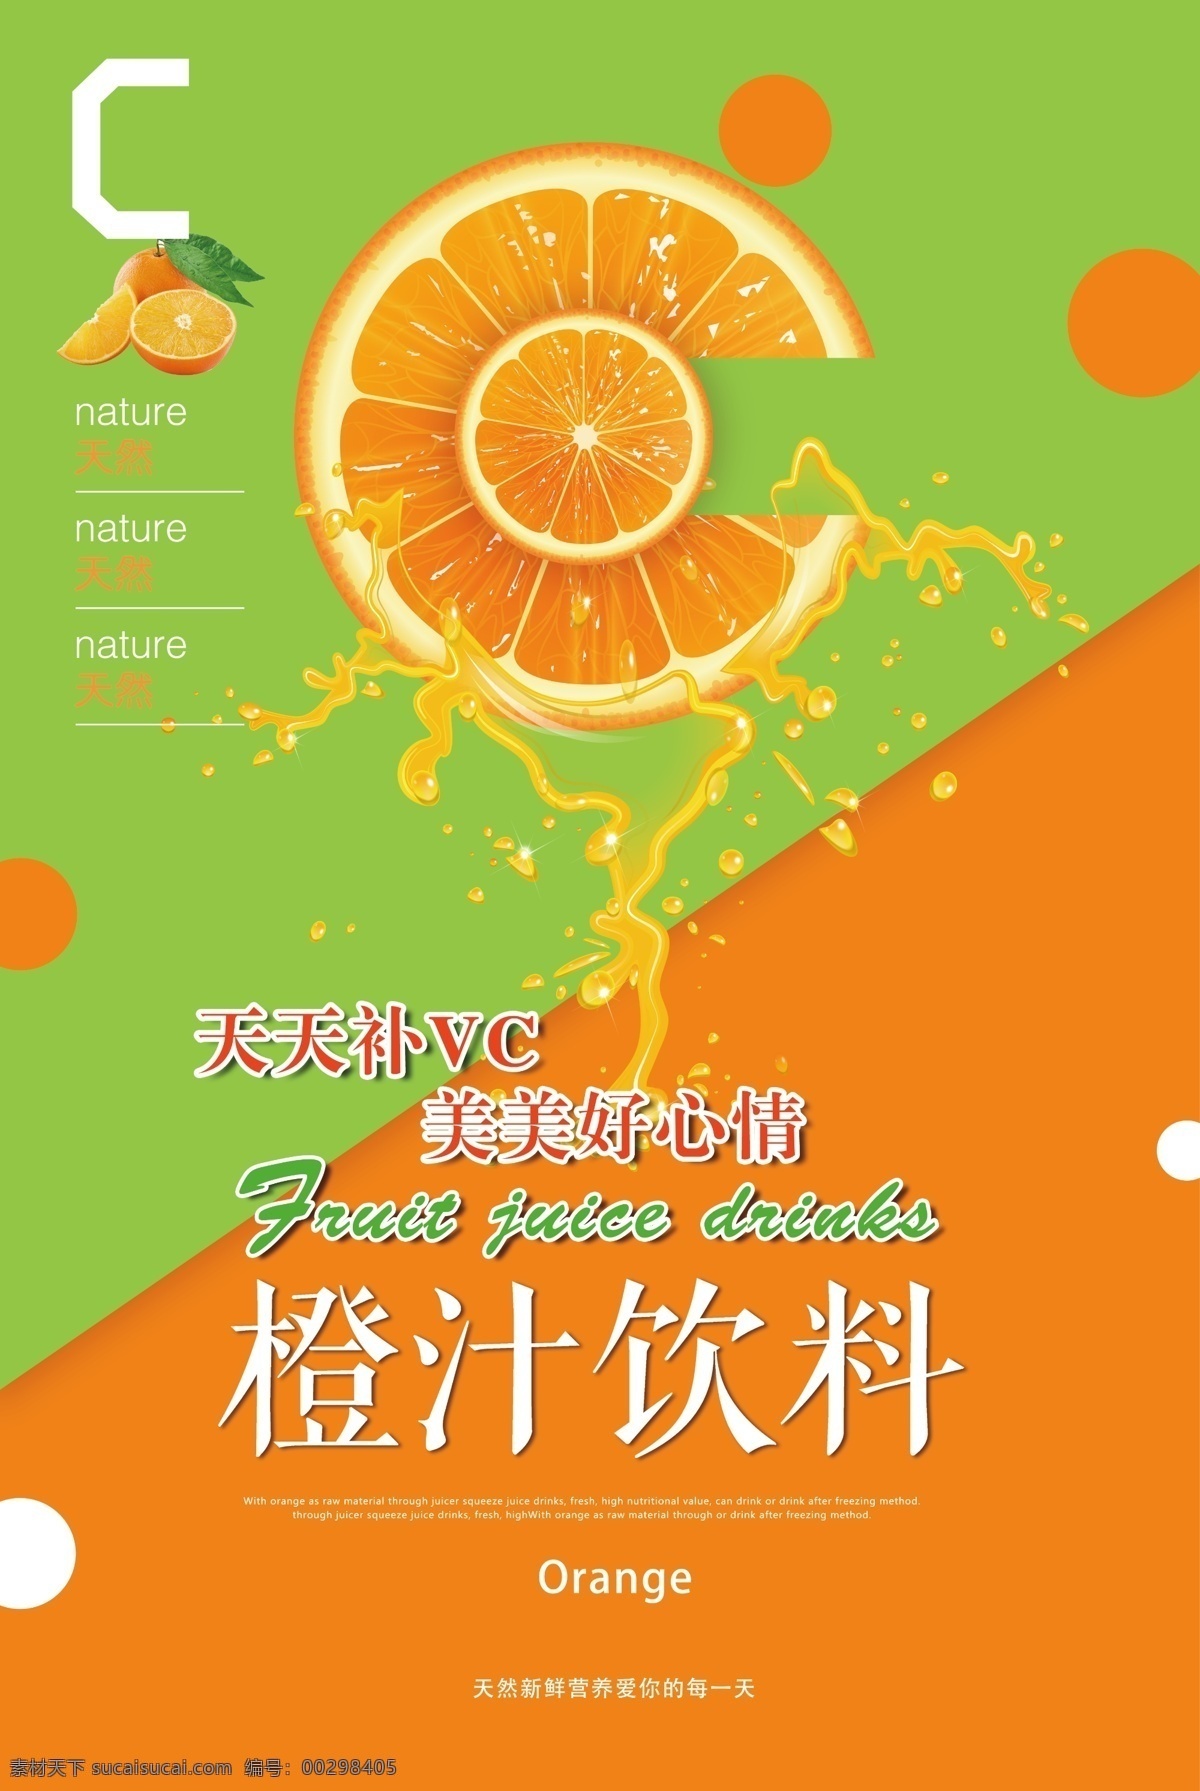 冷饮海报 饮品海报 果汁海报 鲜榨果汁 冷饮厅海报 原味果饮 橙汁饮料 橙汁 现炸橙汁 饮品灯箱片 海报